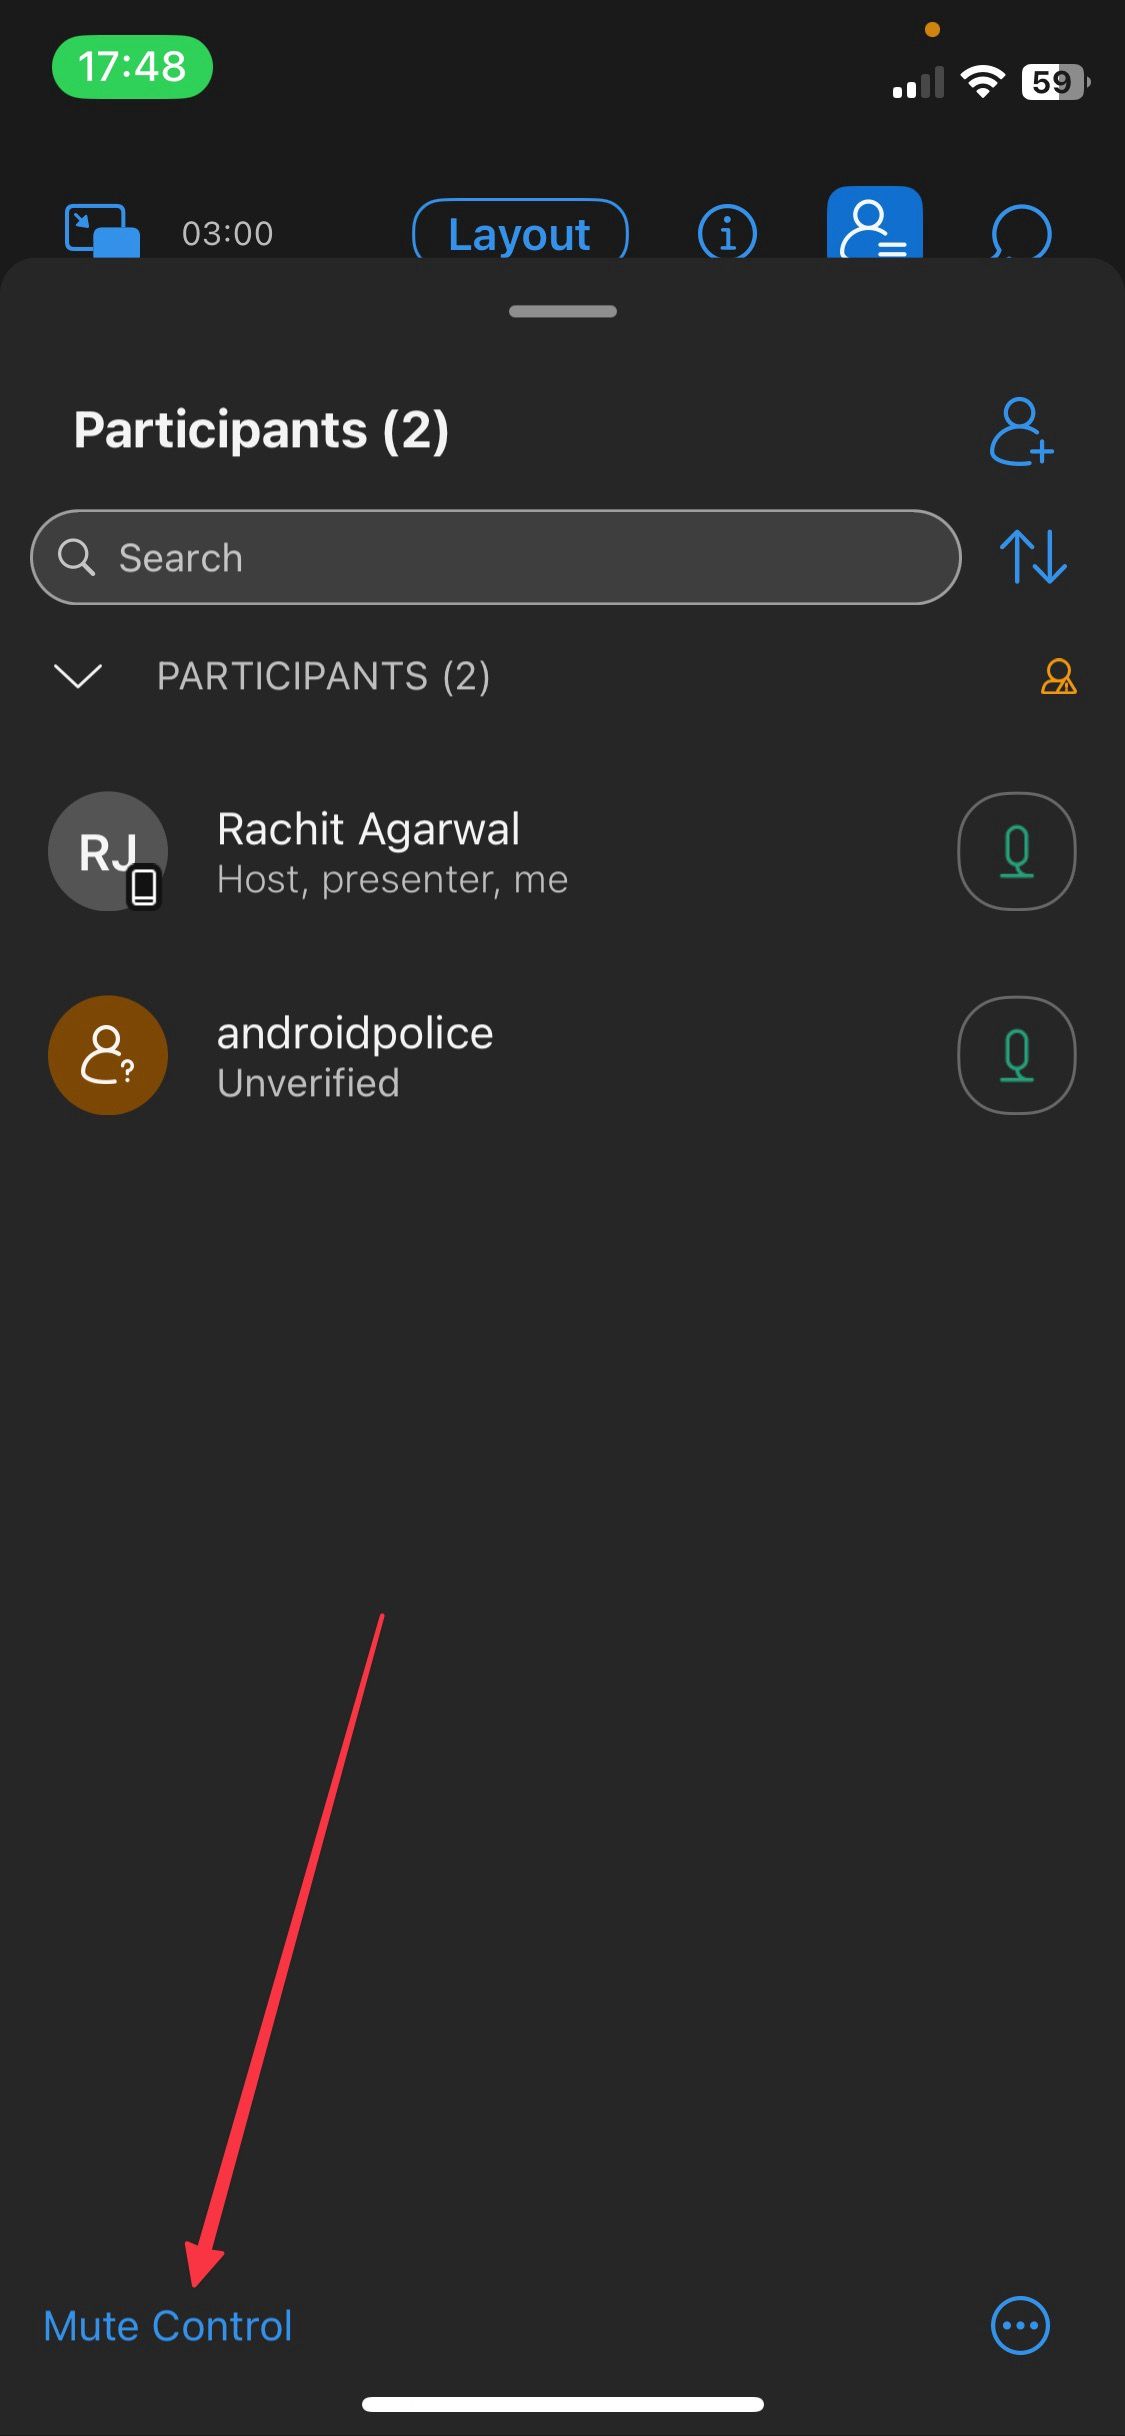 Tela do painel de participantes do aplicativo móvel Webex mostrando o botão silenciar tudo